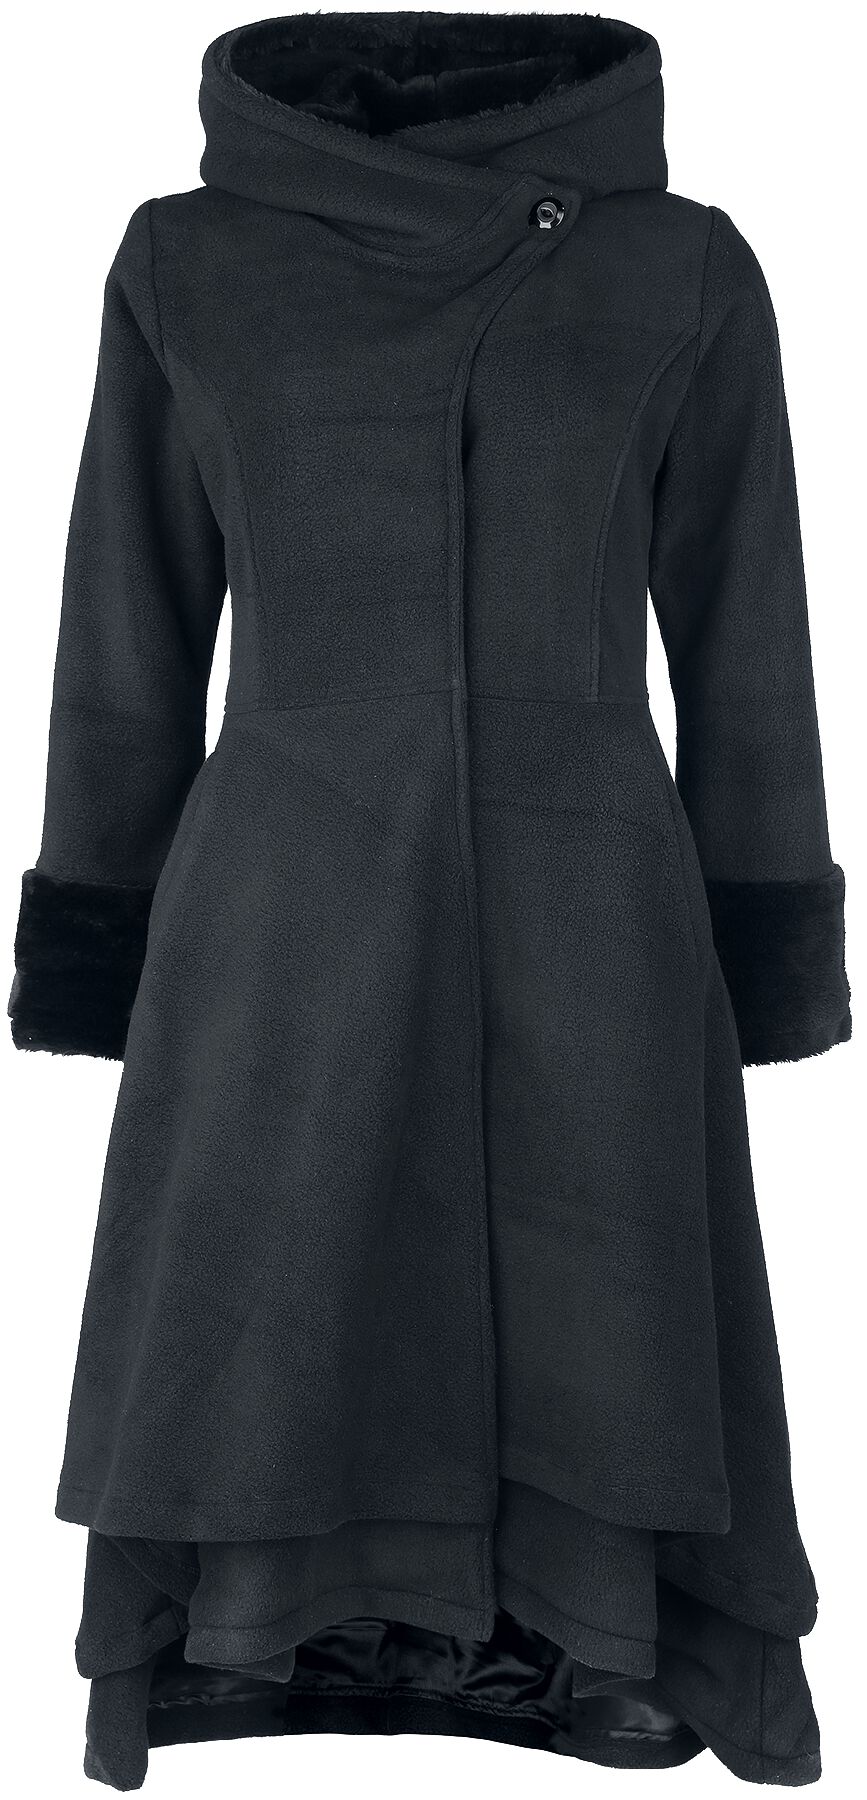 Vixxsin - Gothic Mantel - Gloaming Coat - XS bis 4XL - für Damen - Größe S - schwarz von Vixxsin